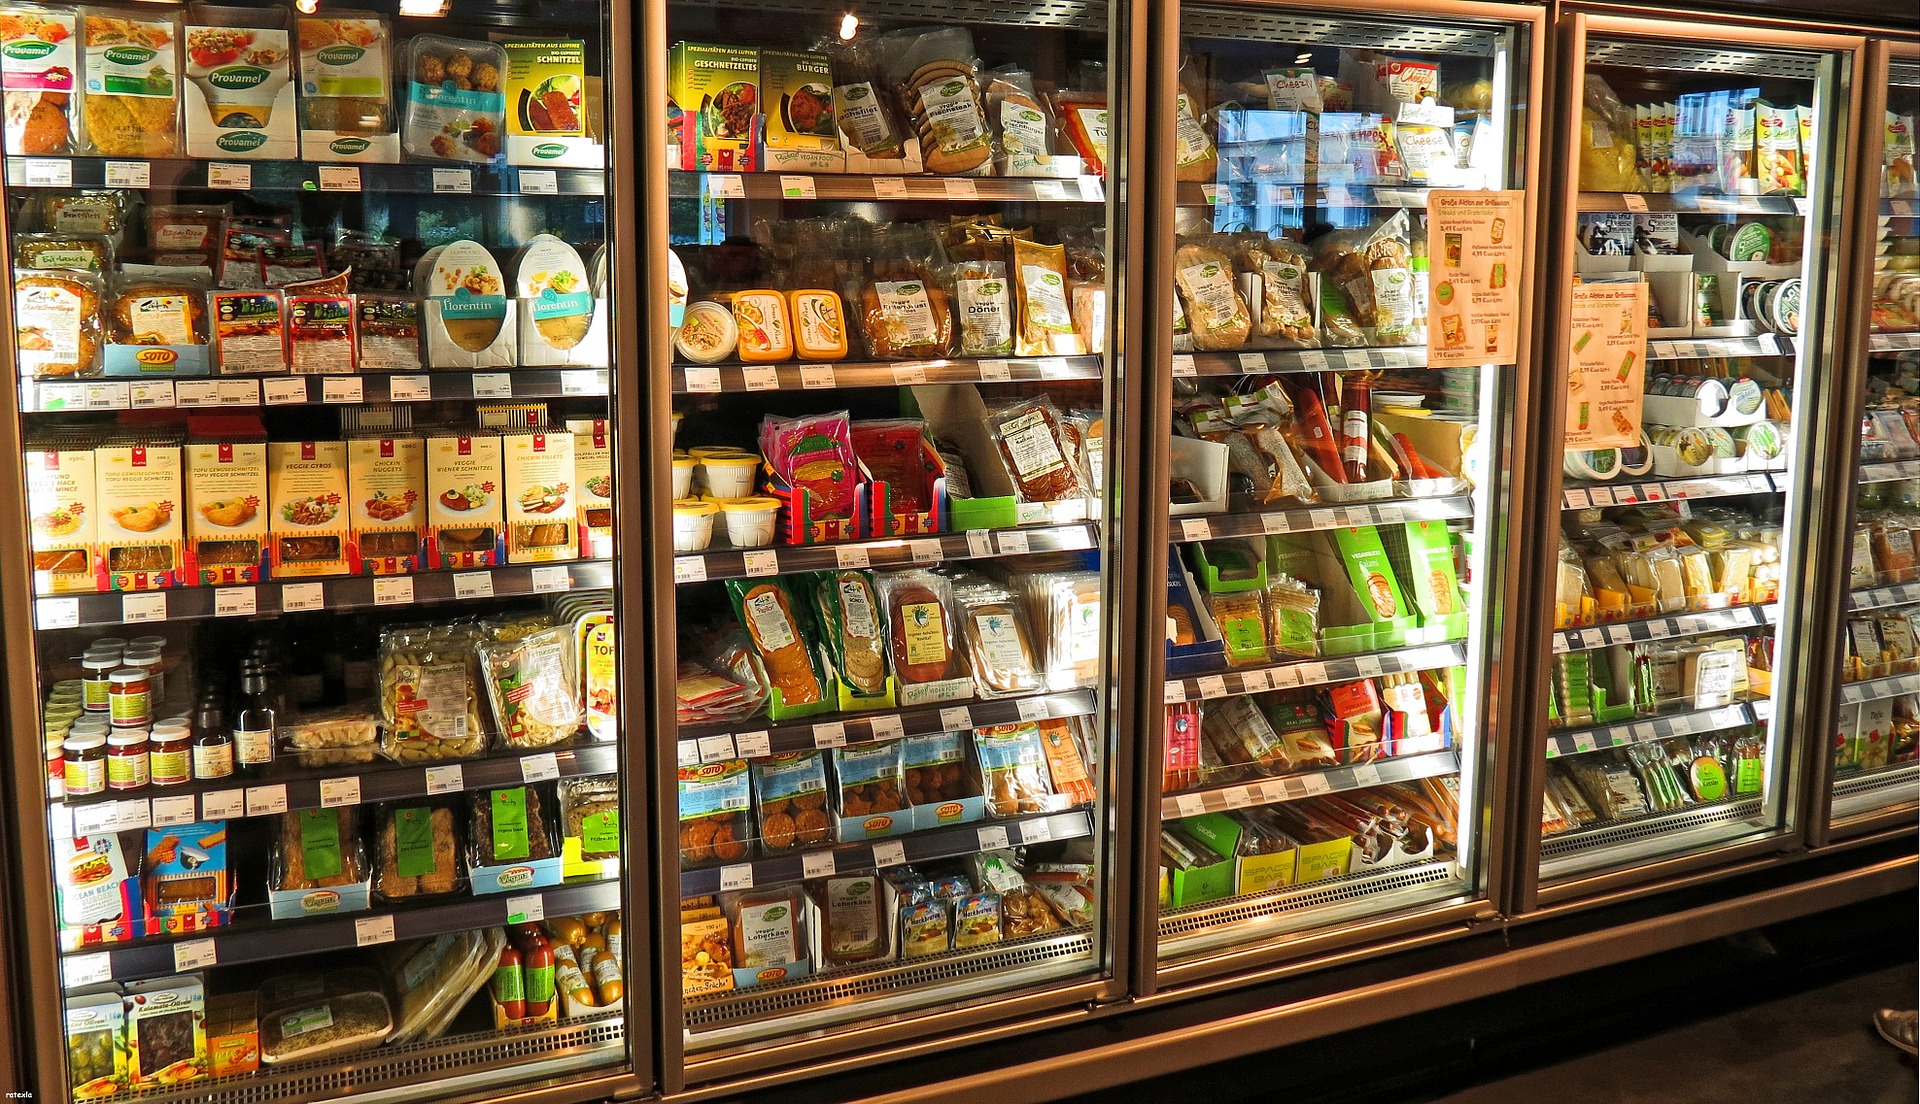 Supermarkten zijn zich bewust van duurzaamheidsthema’s bij groente en fruit